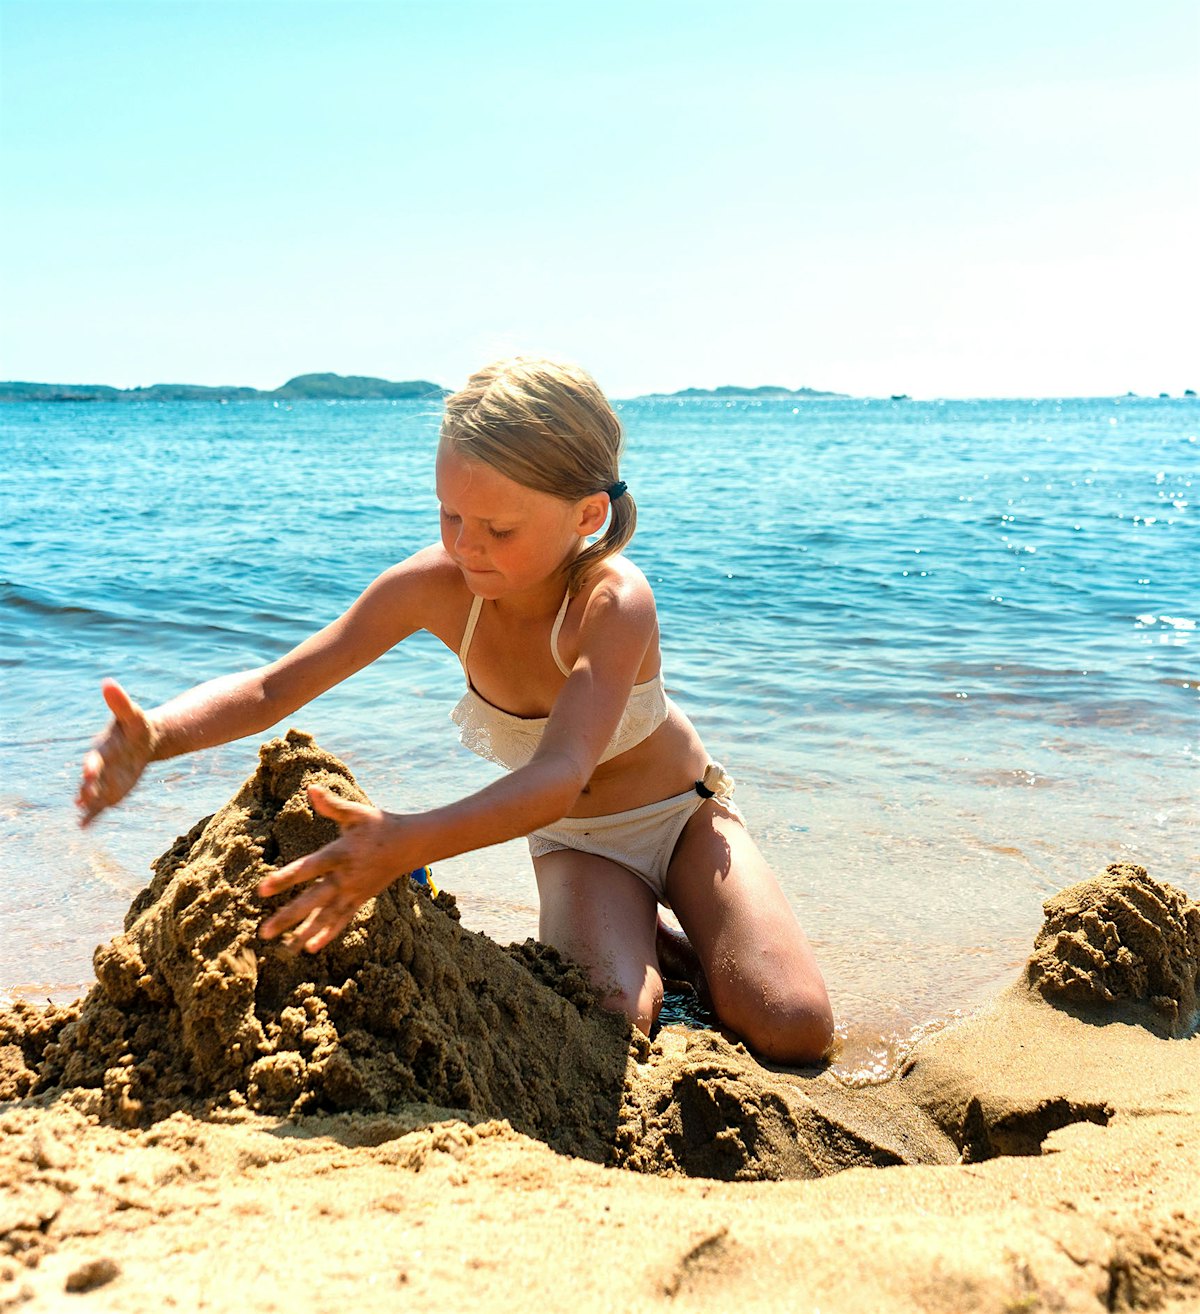 Jente sitter i strandkanten og bygger sandslott. Foto